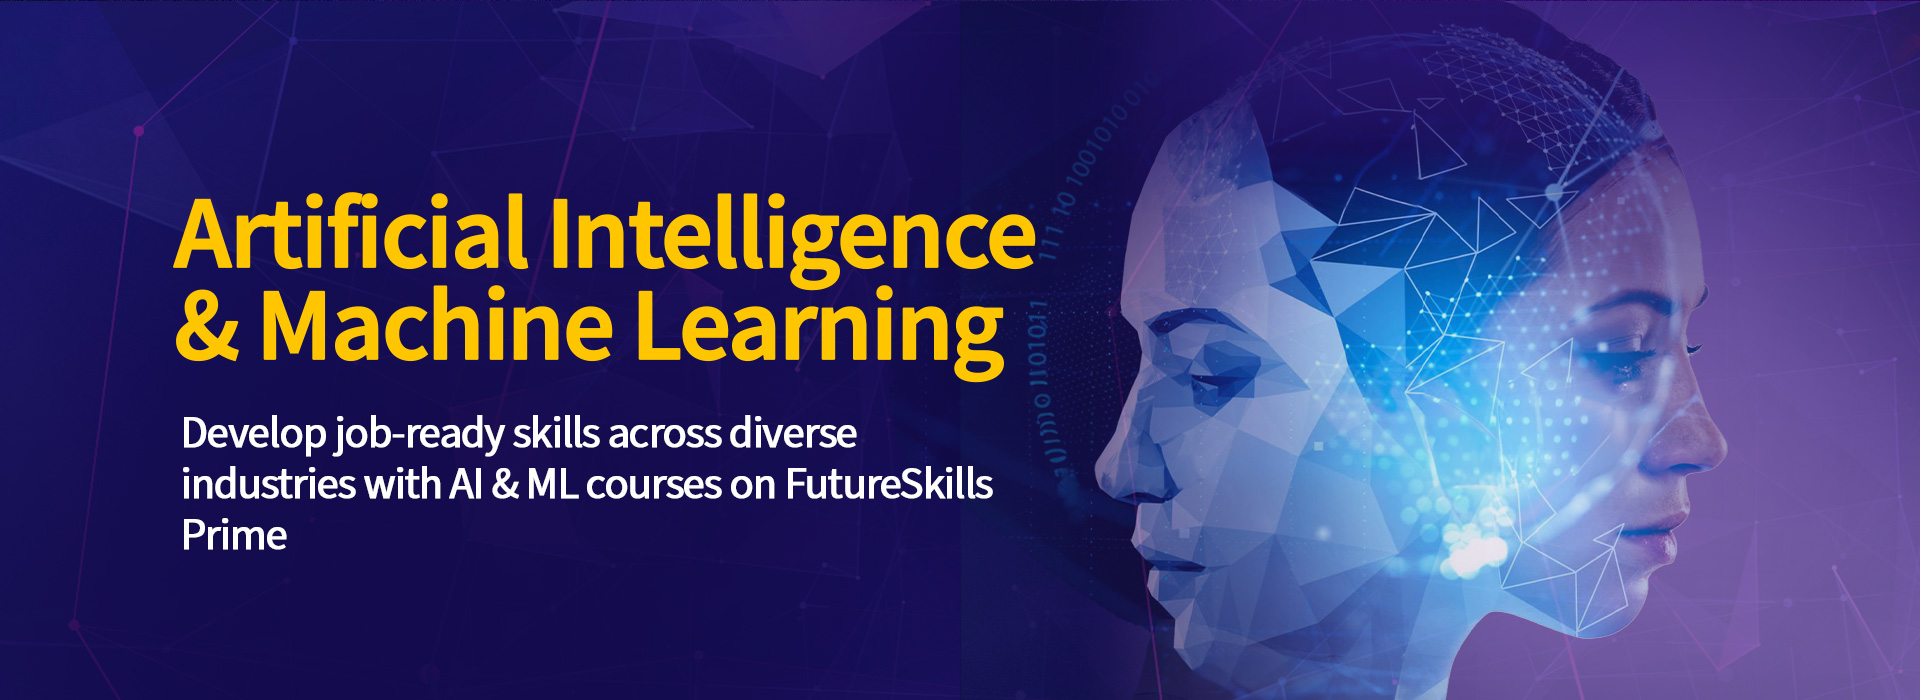 AI & Machine Learning Courses